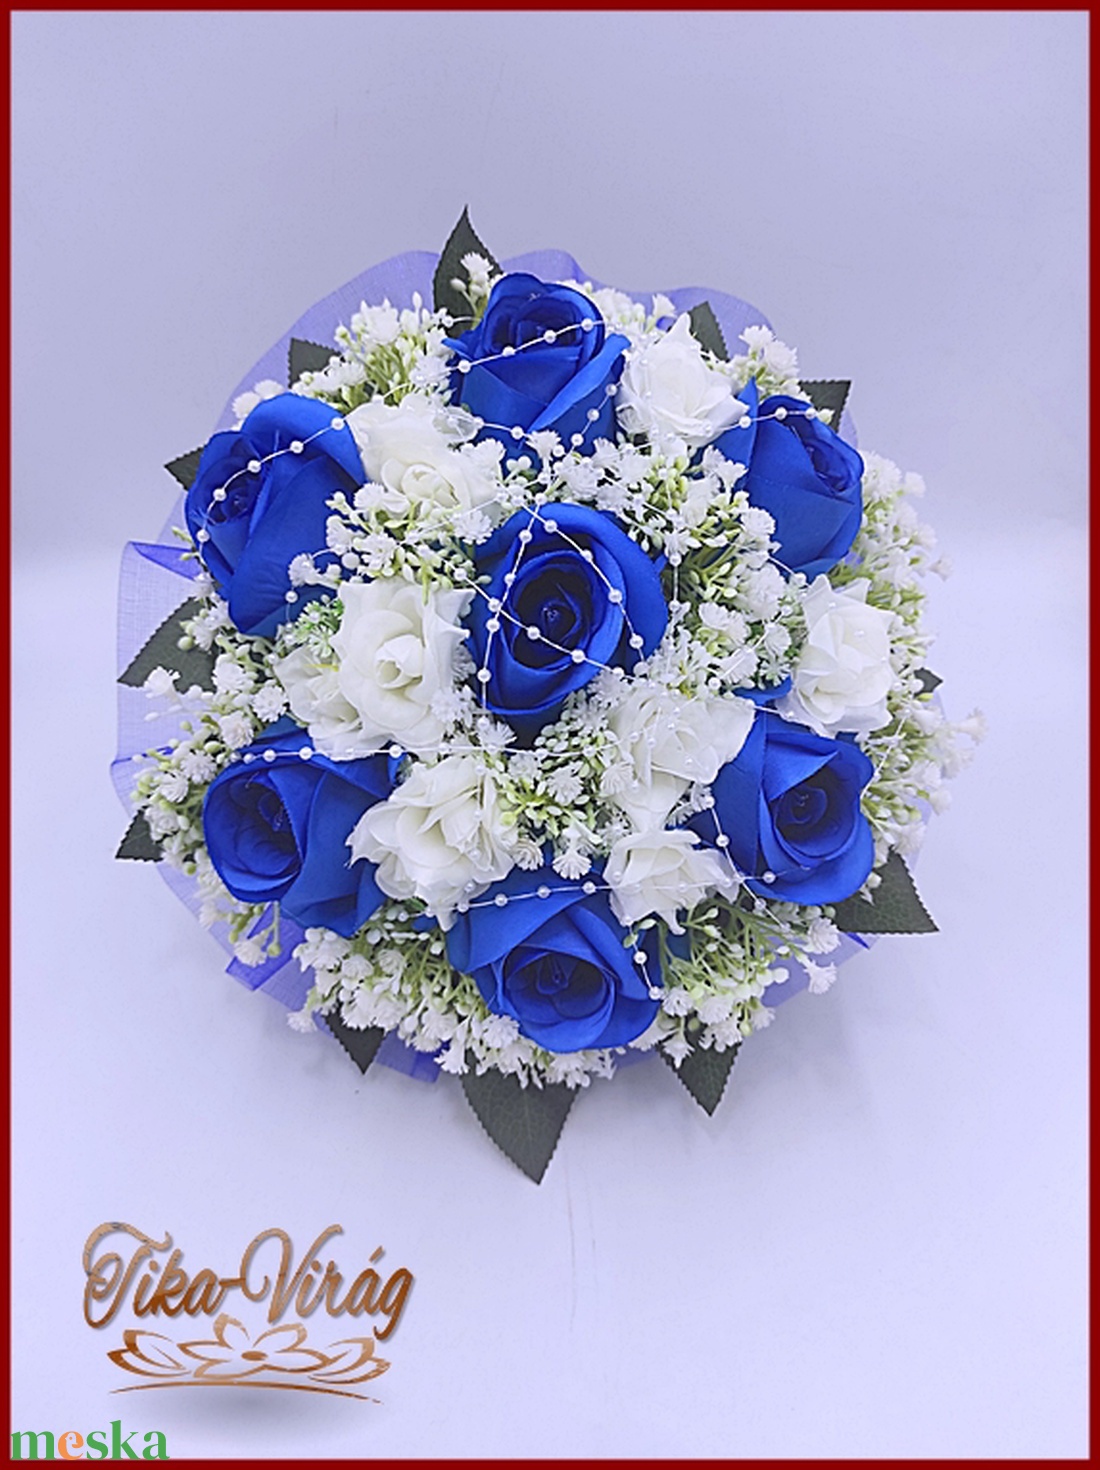 Király-kék 7 virágos örök-csokor  - esküvő - menyasszonyi- és dobócsokor - Meska.hu